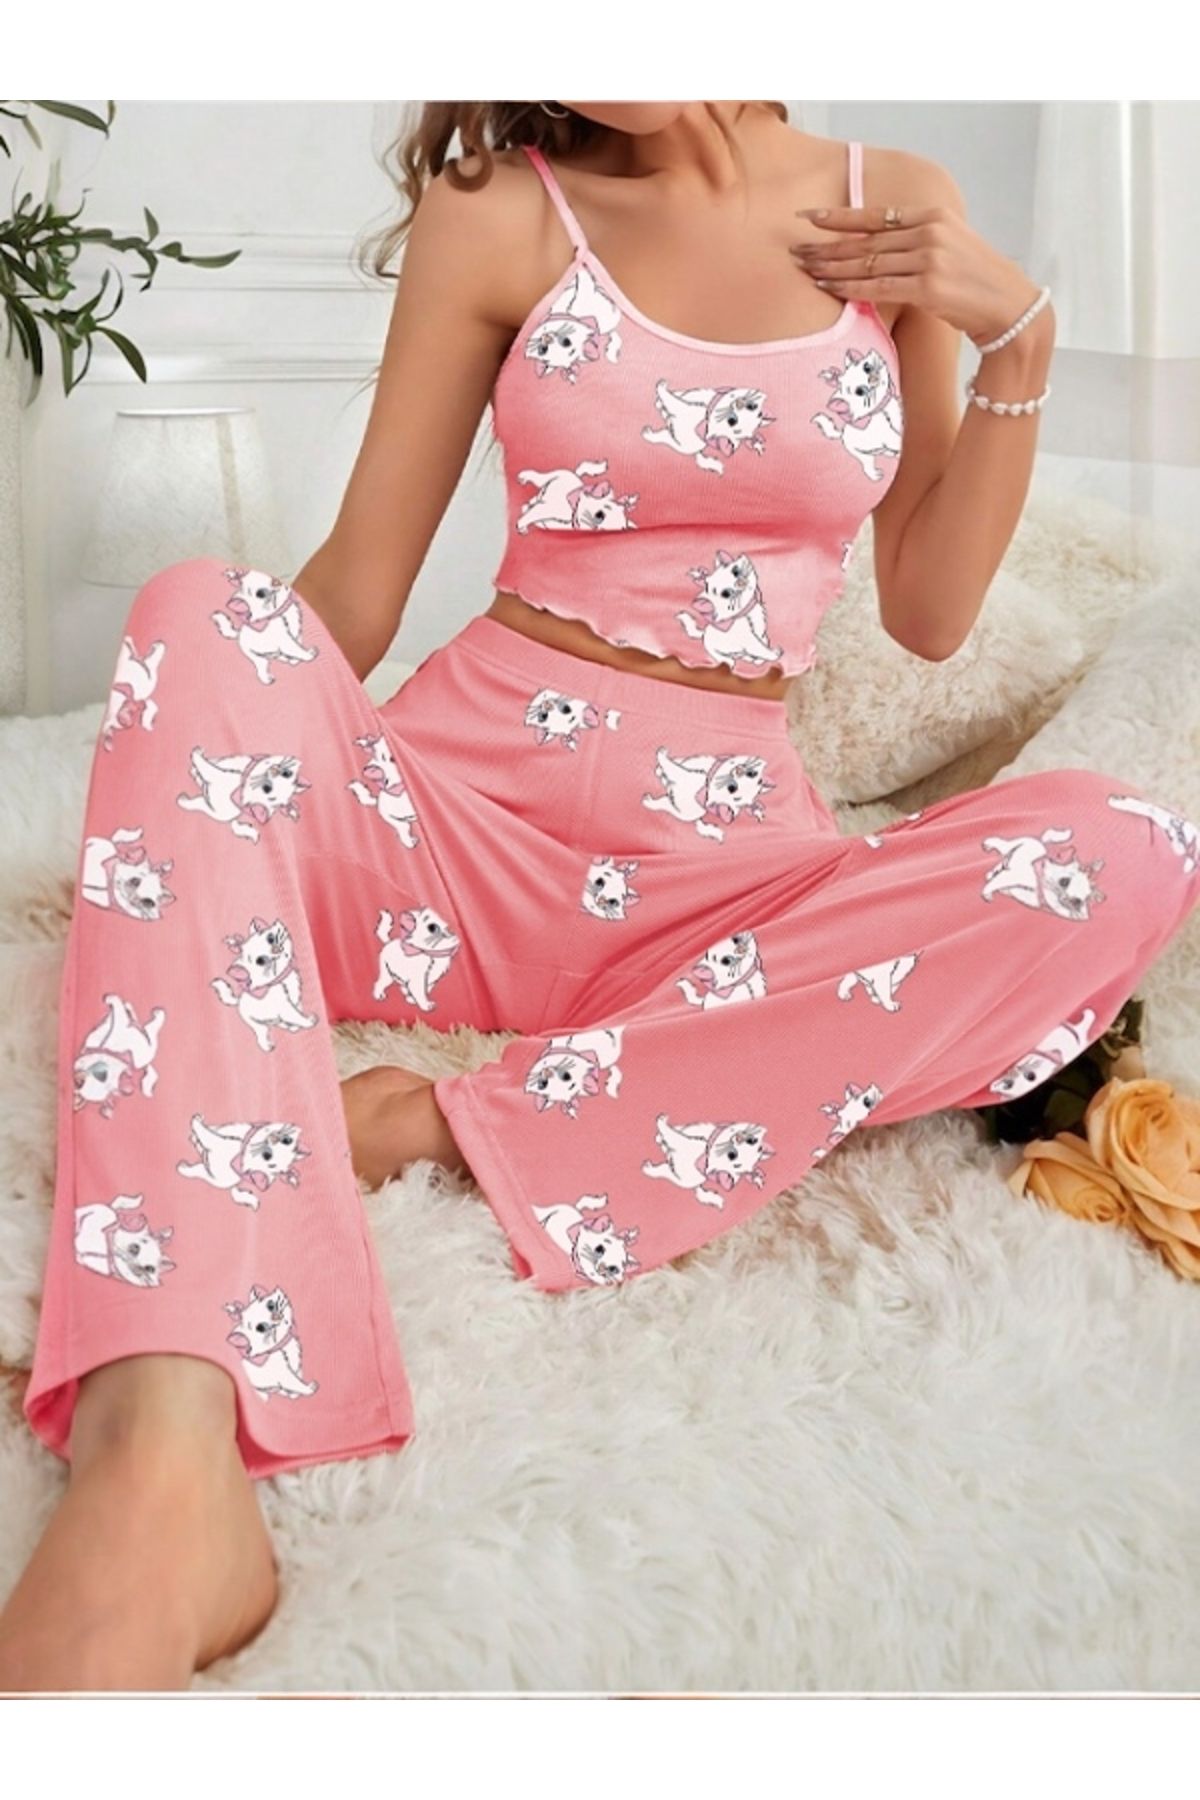 Cesur Kadın Askılı Uzun Pijama Takımı PinkCatBig1